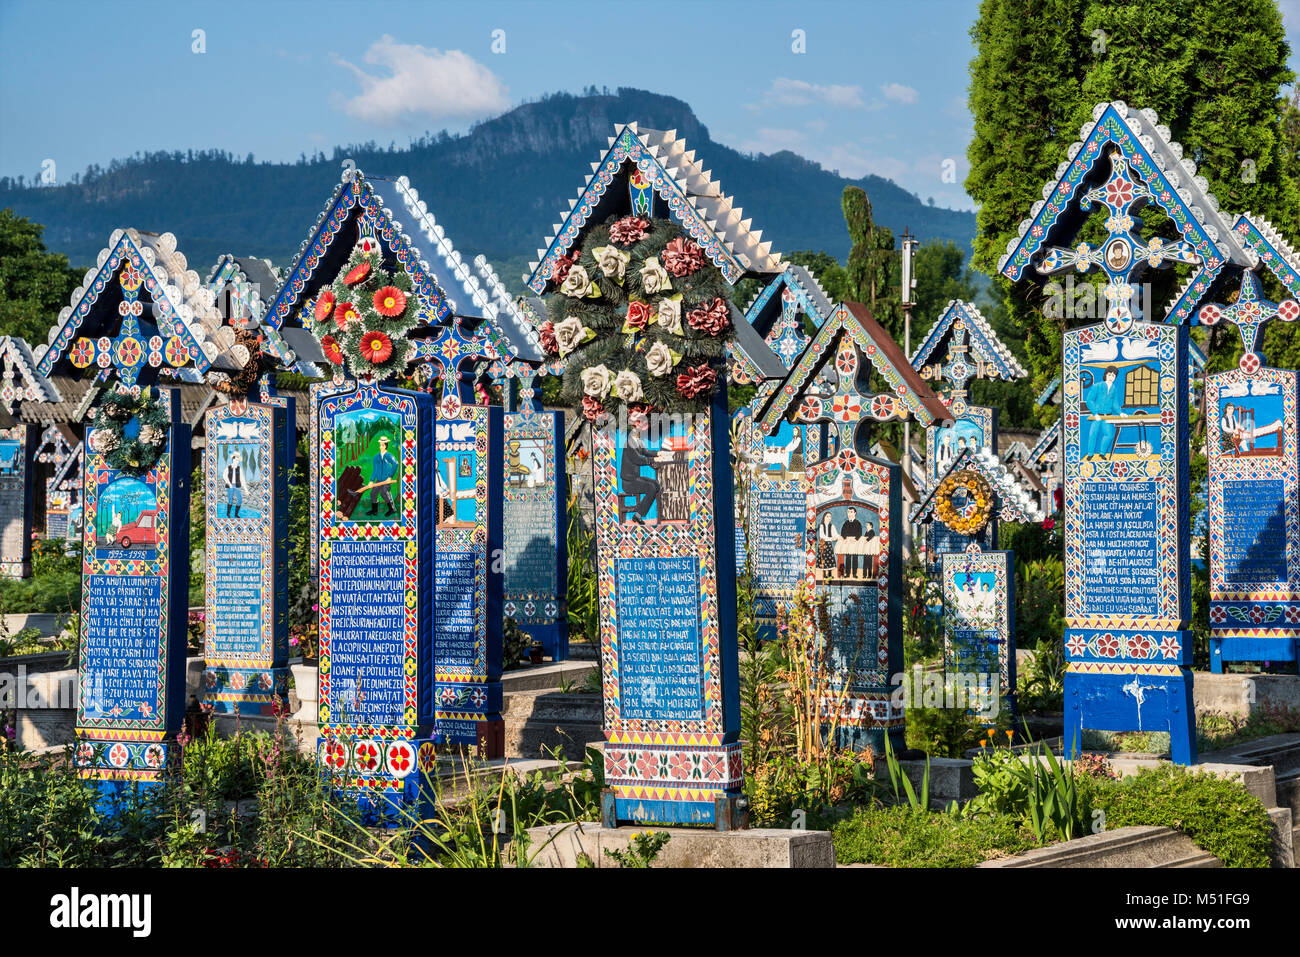 Panneaux en bois sculptés avec des croisements à épitaphes sur les tombes, le Cimetière Joyeux (Cimitirul Vesel) de Sapanta Maramures, Roumanie, Région Banque D'Images